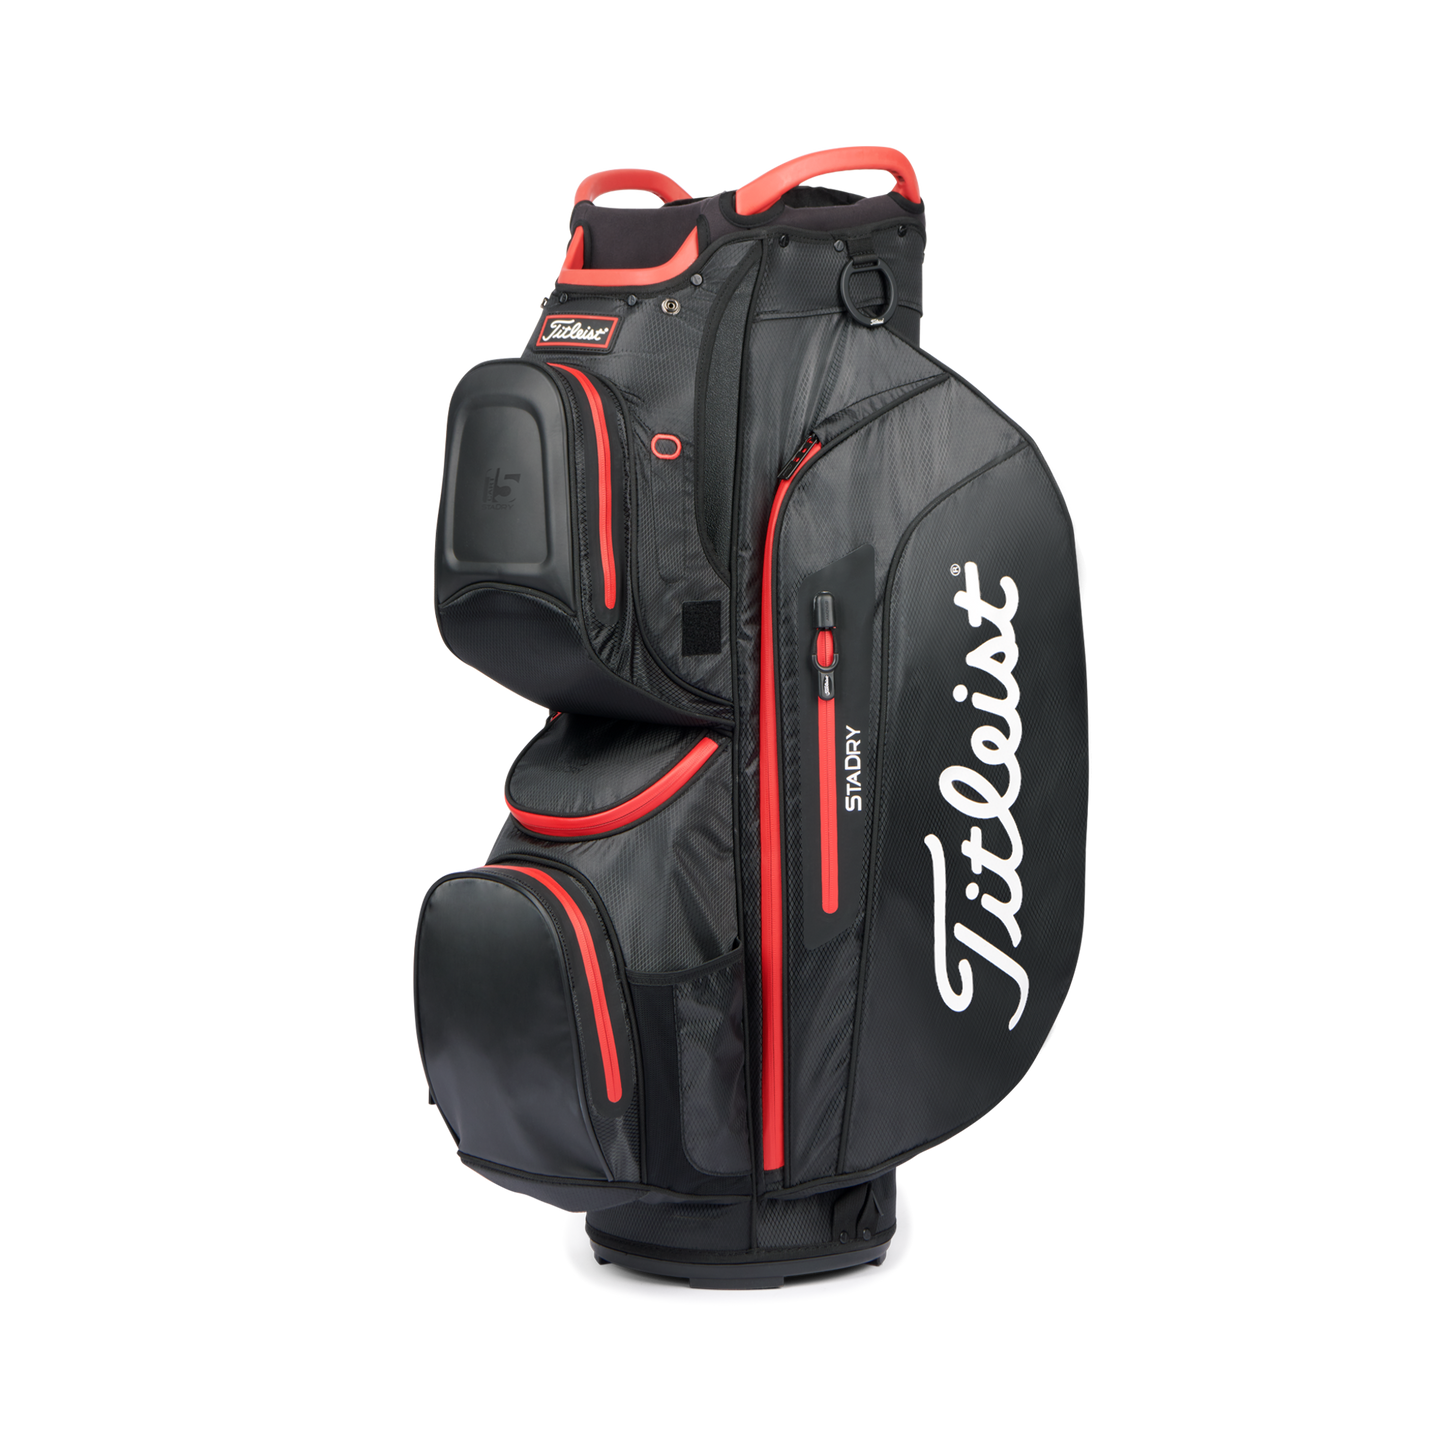 Titleist Golf Cart 15 StaDry Cart Bag Black/Red  